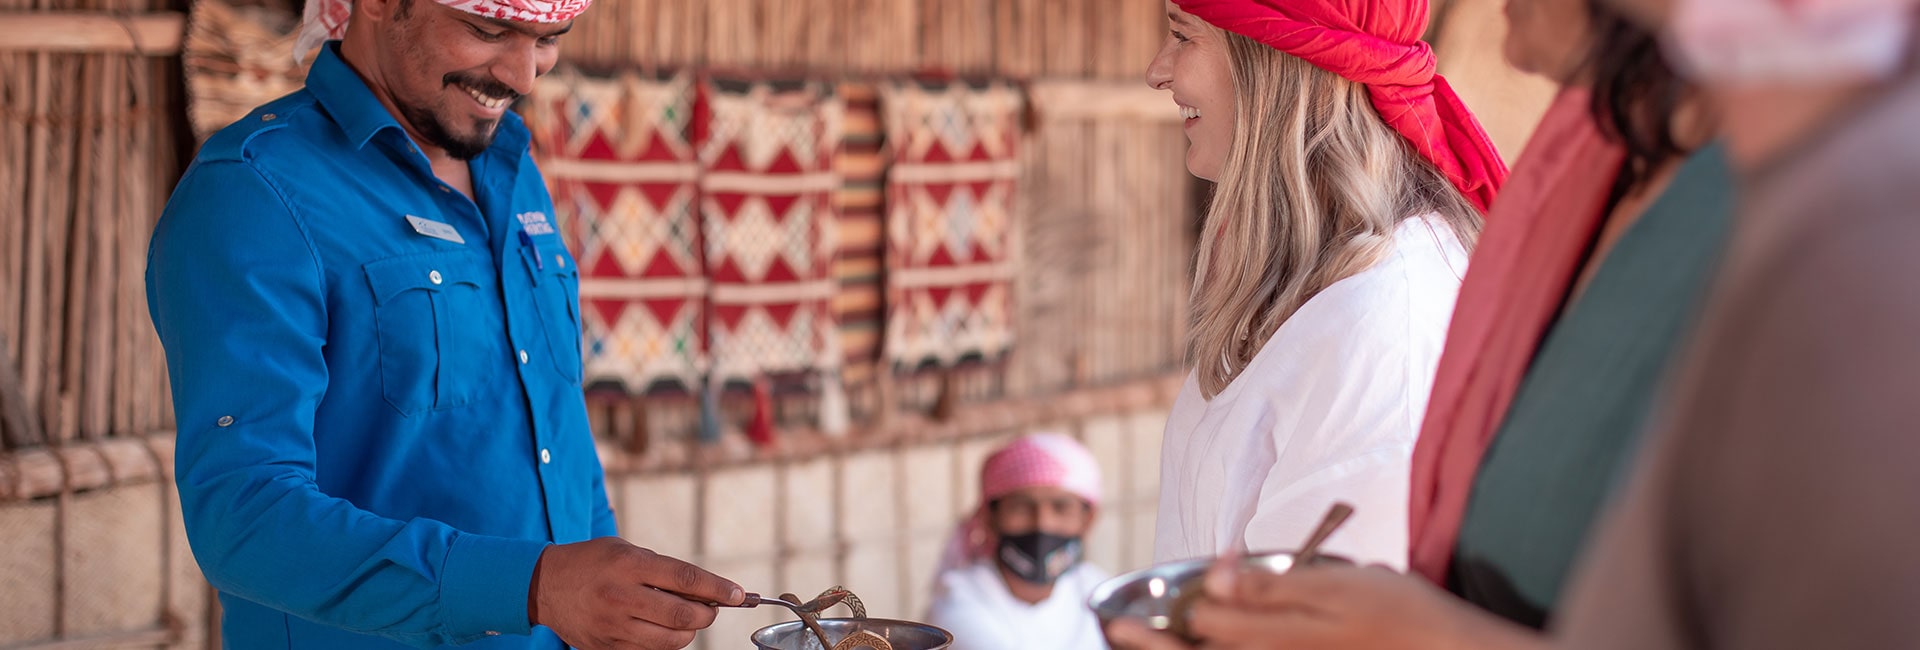 Safari de la cultura beduina